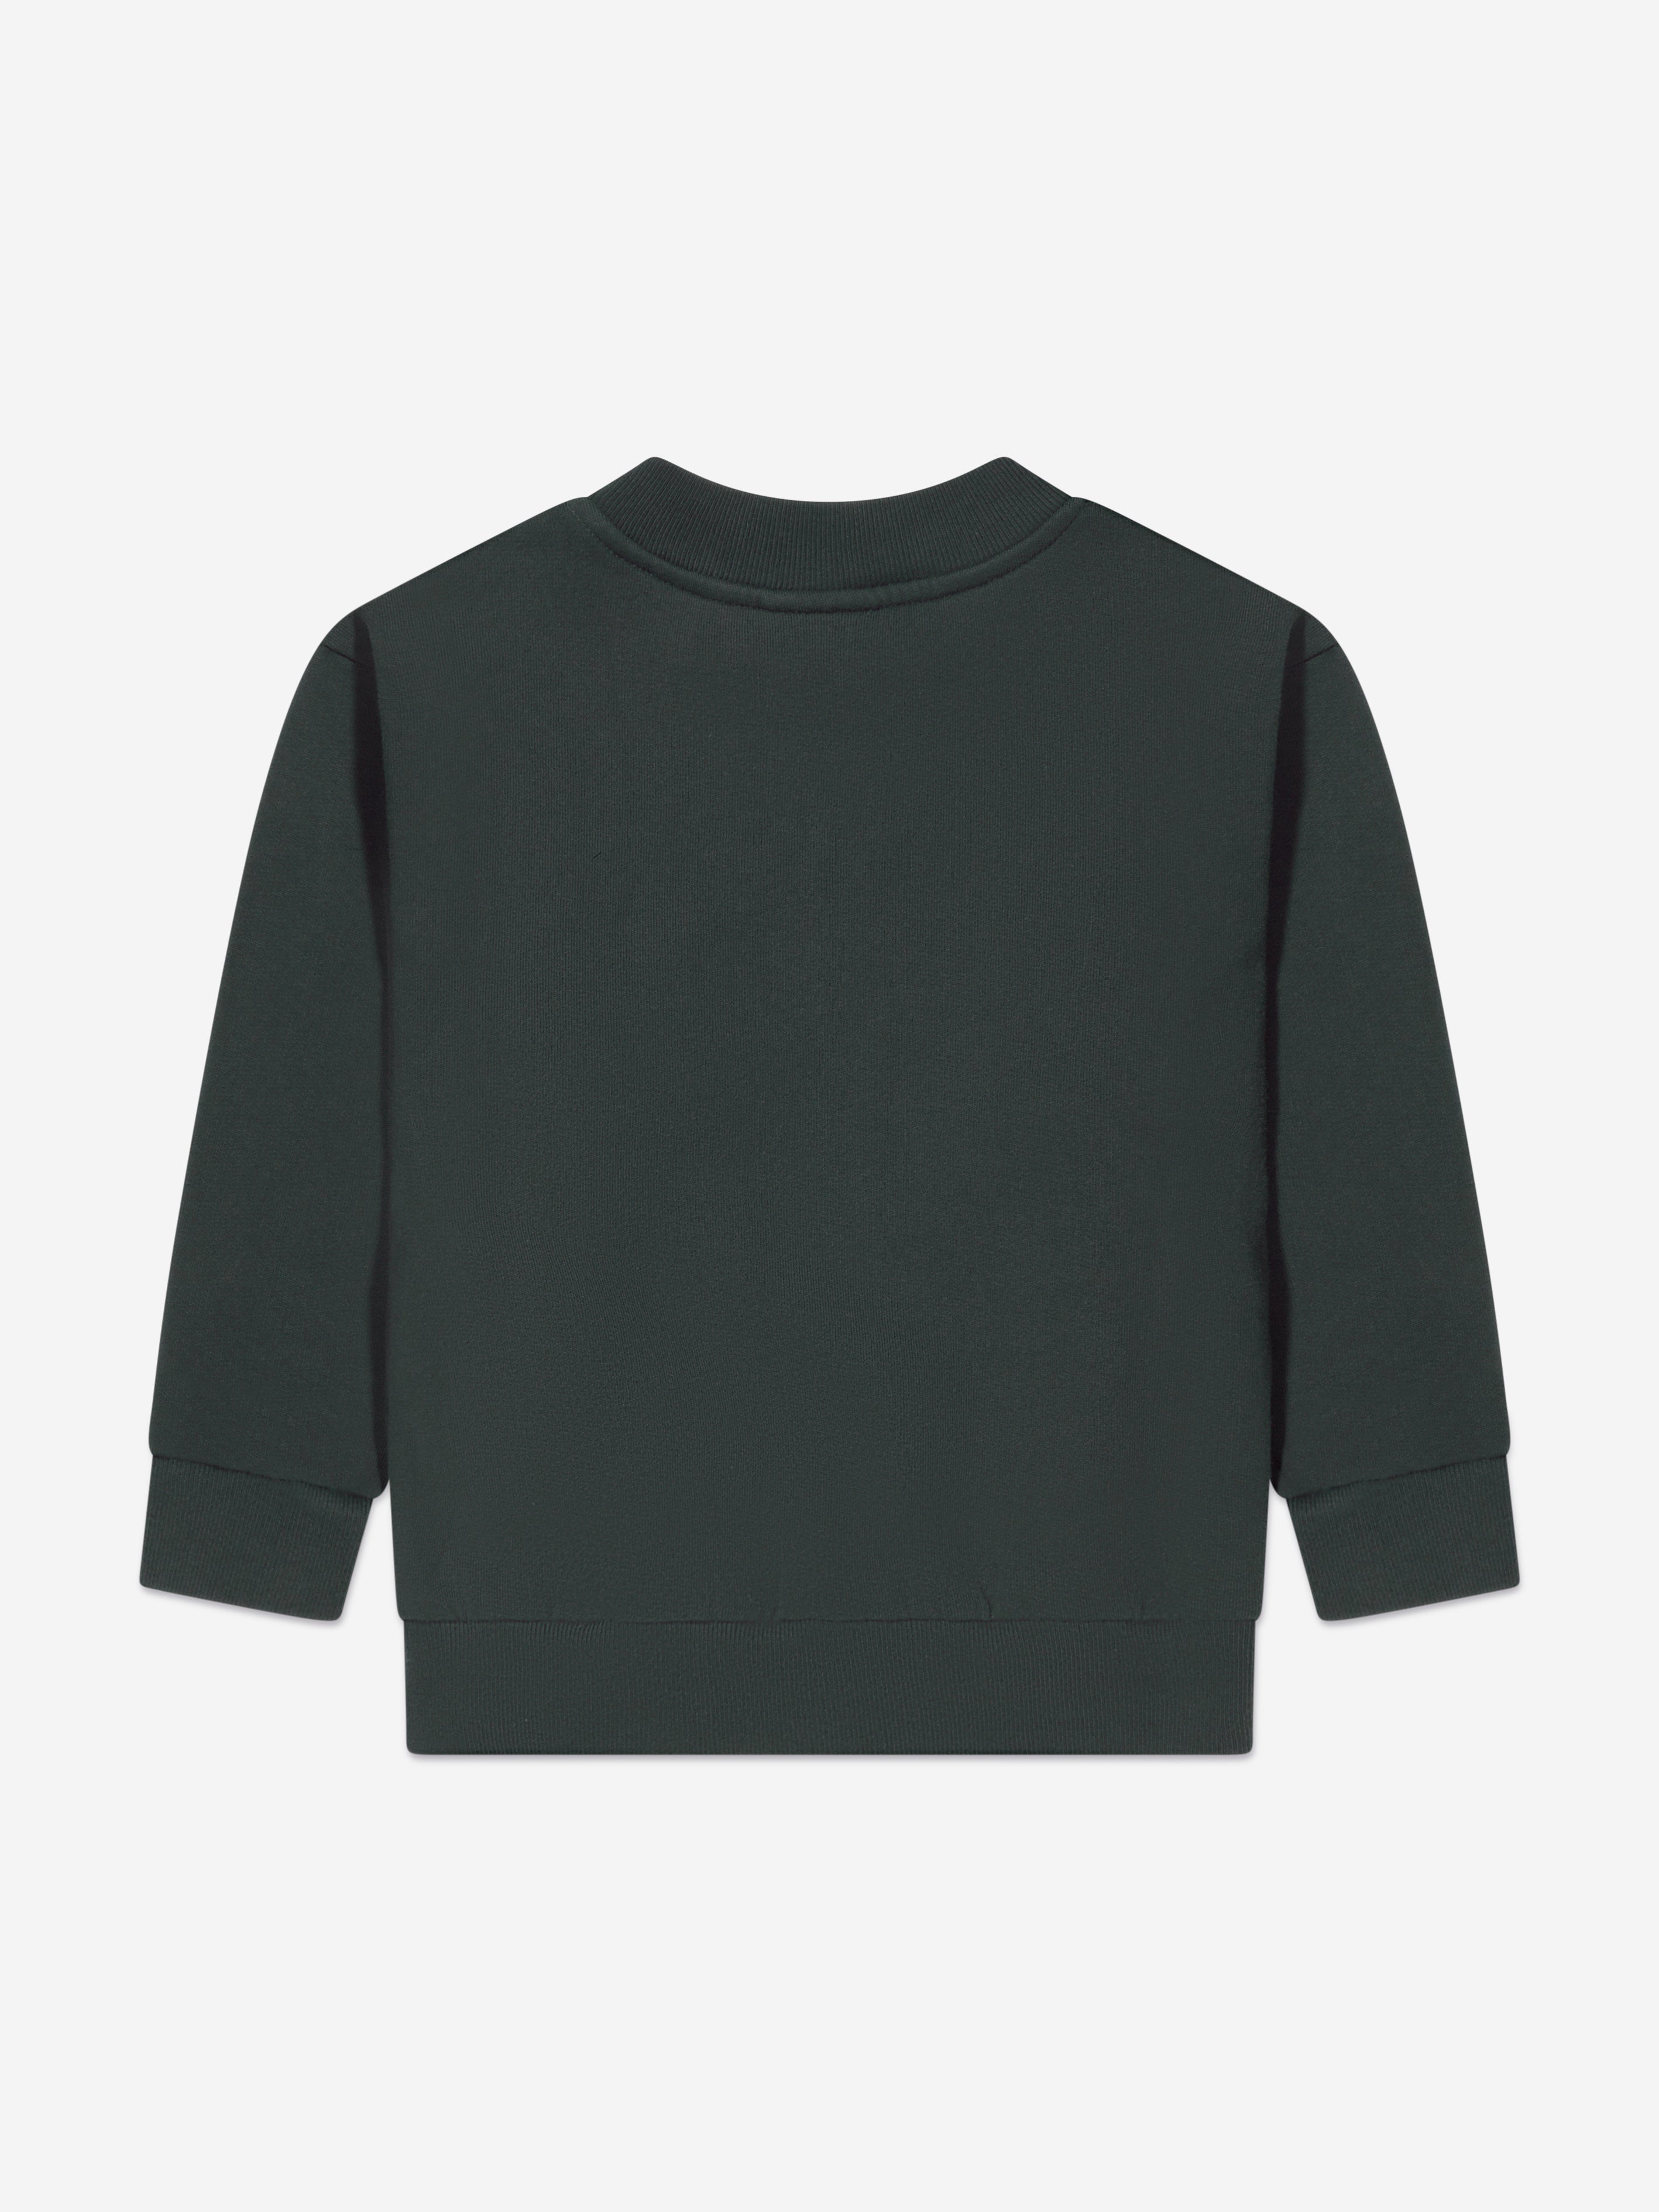 Balenciaga Kids x adidas crew-neck sweatshirt - Green